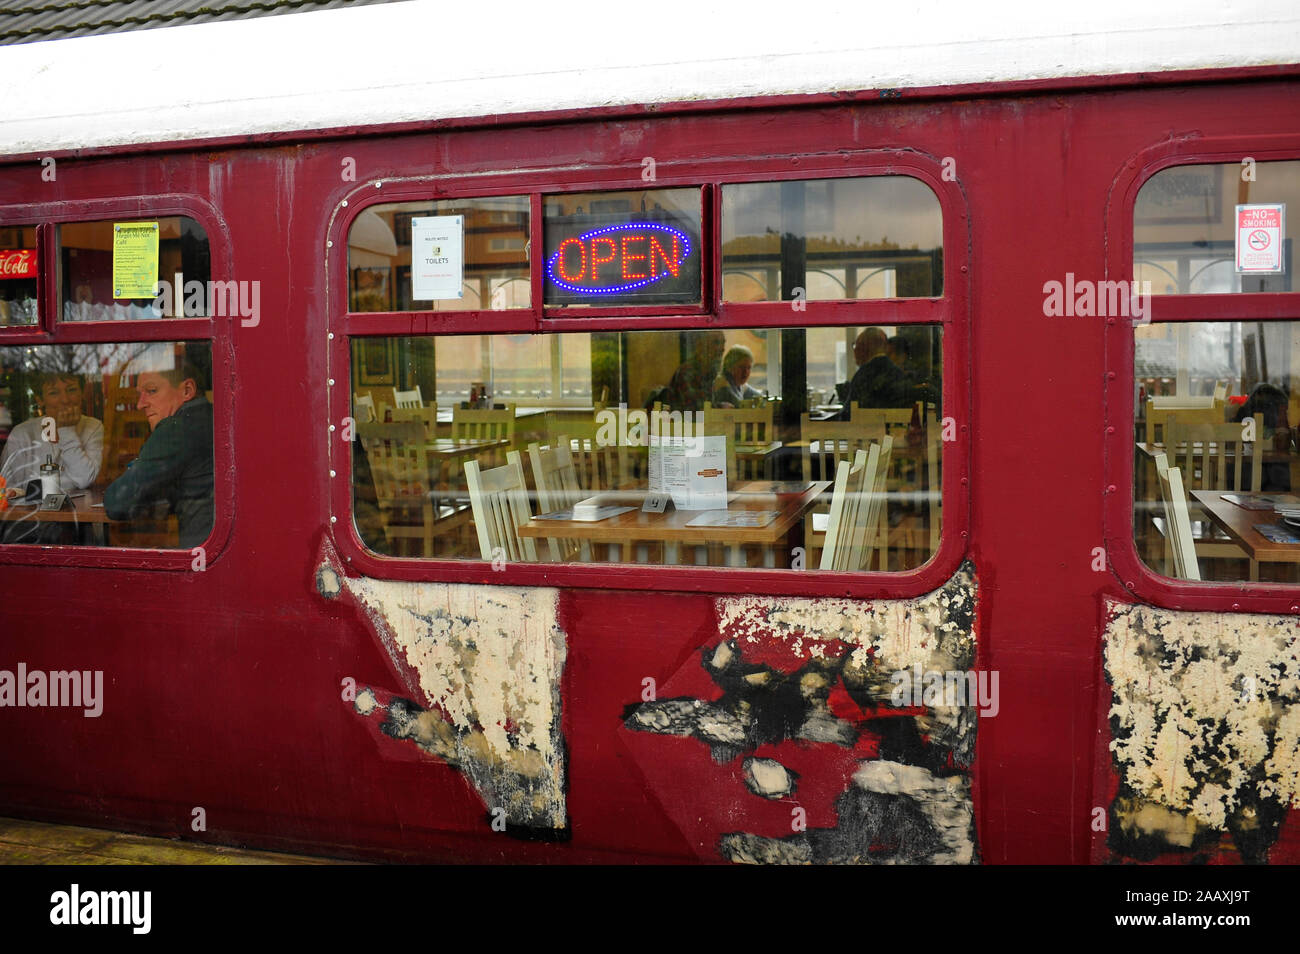 La gare Cafe dans une ancienne gare transformée sur chariot Pleasure Island,St Annes,UK Banque D'Images